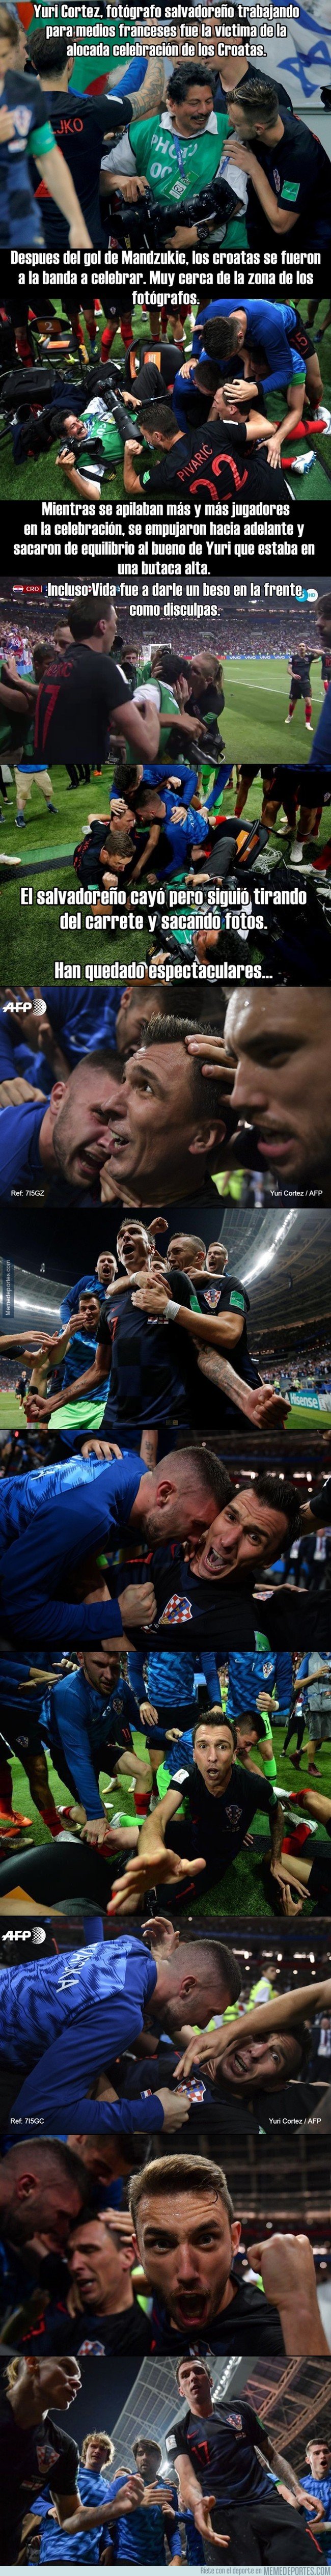 1044782 - Épico: El fotógrafo salvadoreño Yuri Cortez cae en la celebración de los jugadores de Croacia, pero sigue tomando fotos